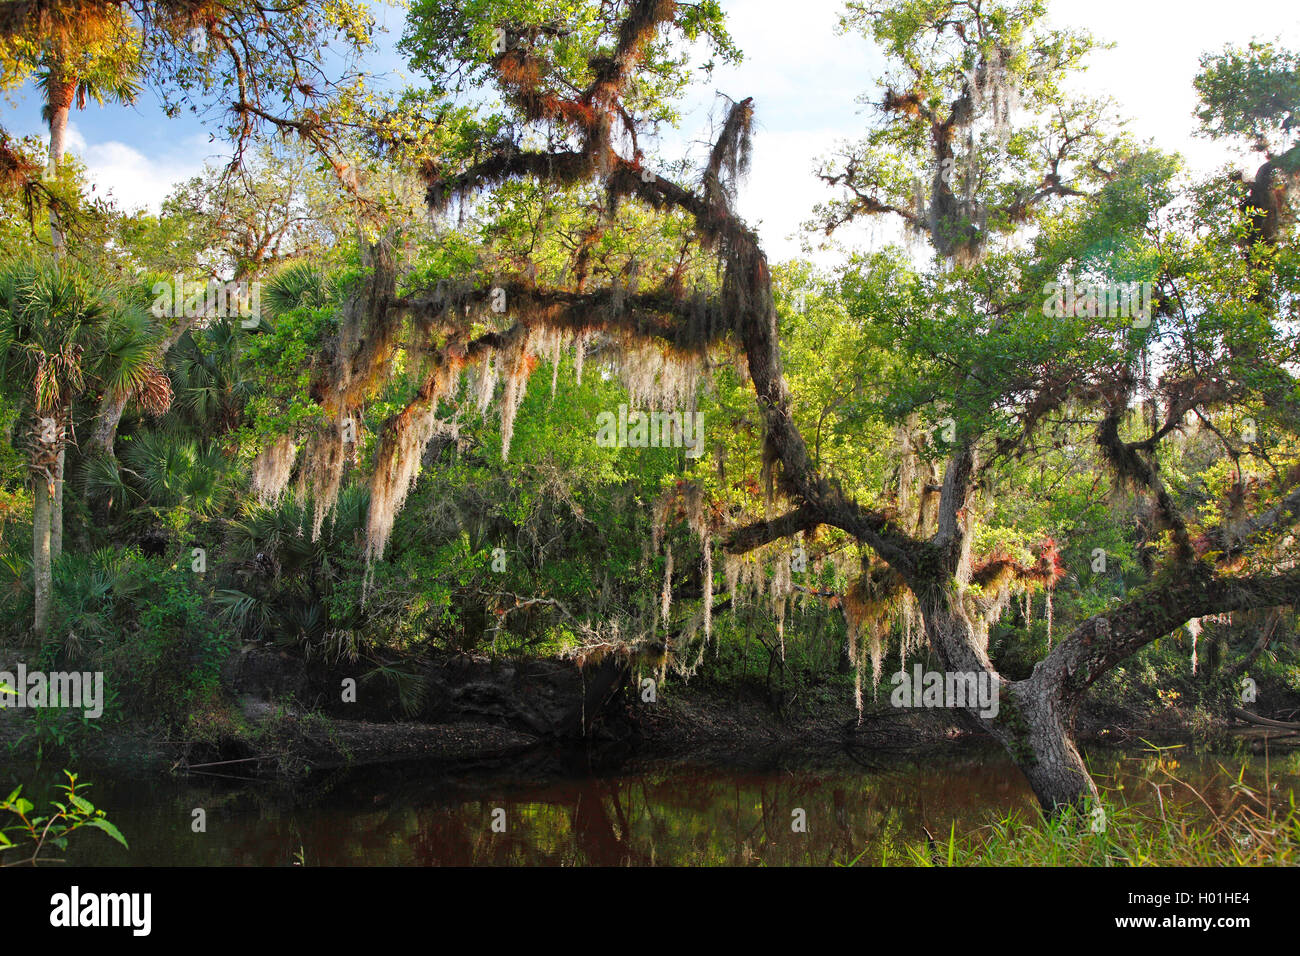 old man's beard, spanish moss (Tillandsia usneoides), subtropical wood, USA, Florida, Myakka National Park Stock Photo